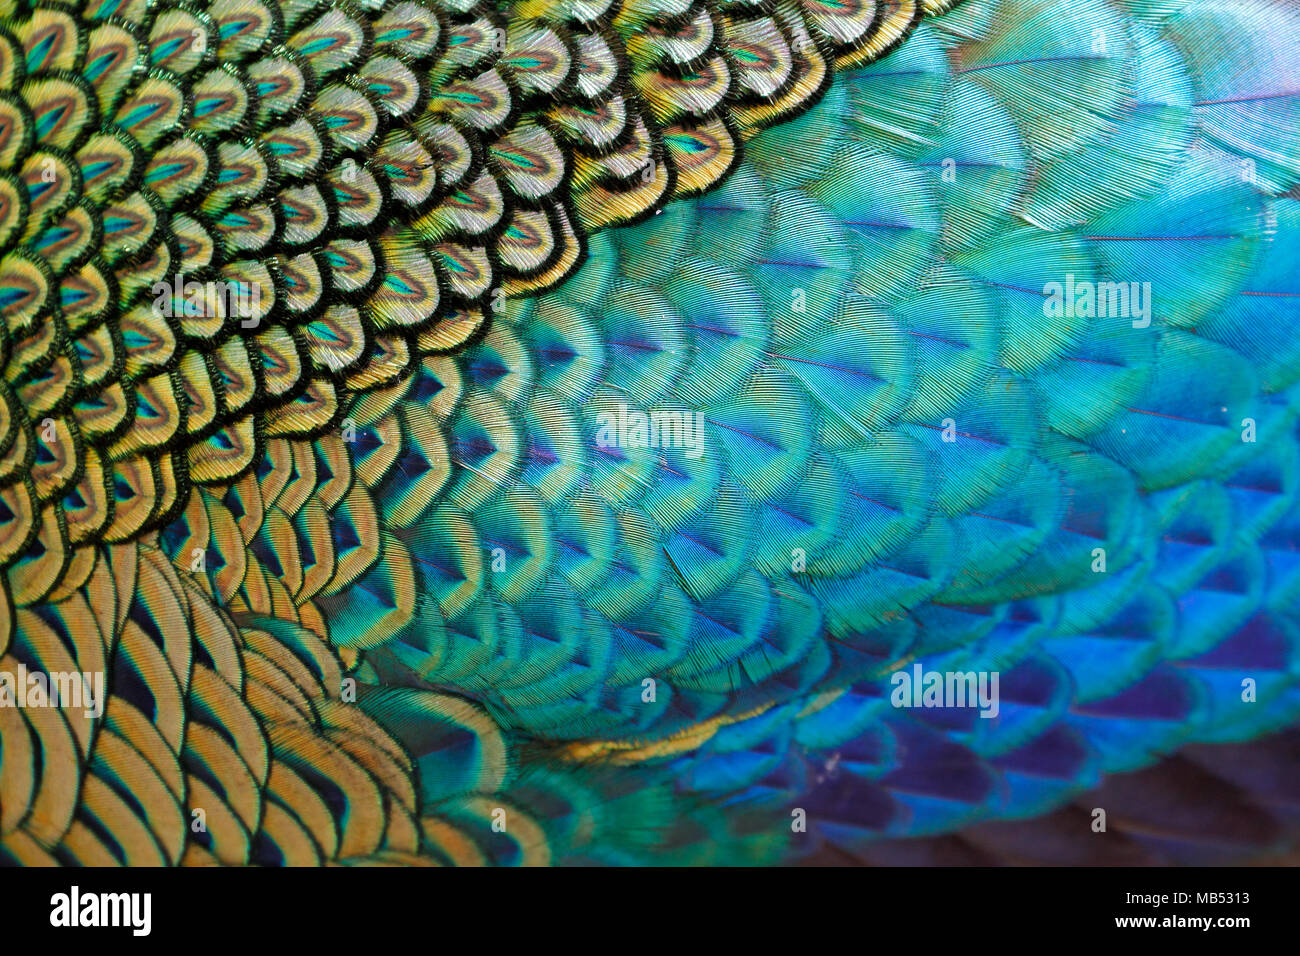 Bello plumaje del macho verde / peafowl peacock (Pavo muticus) superficial (DOF) Foto de stock